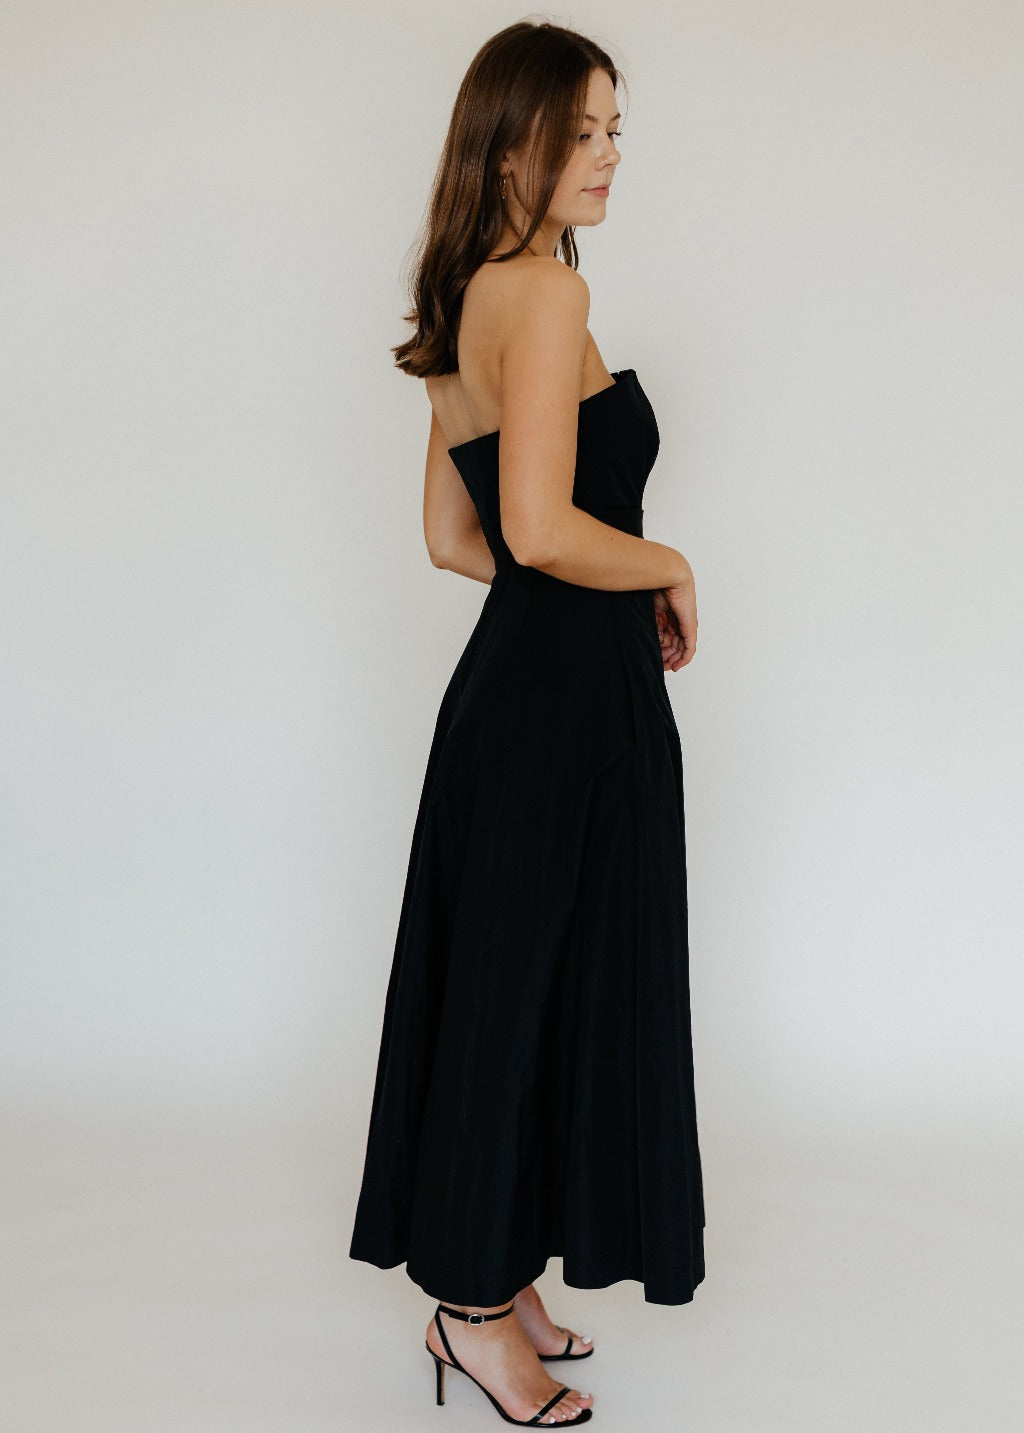 SALE Brandon Maxwell Rebecca Dress  Tula Online Boutique – Tula Boutique